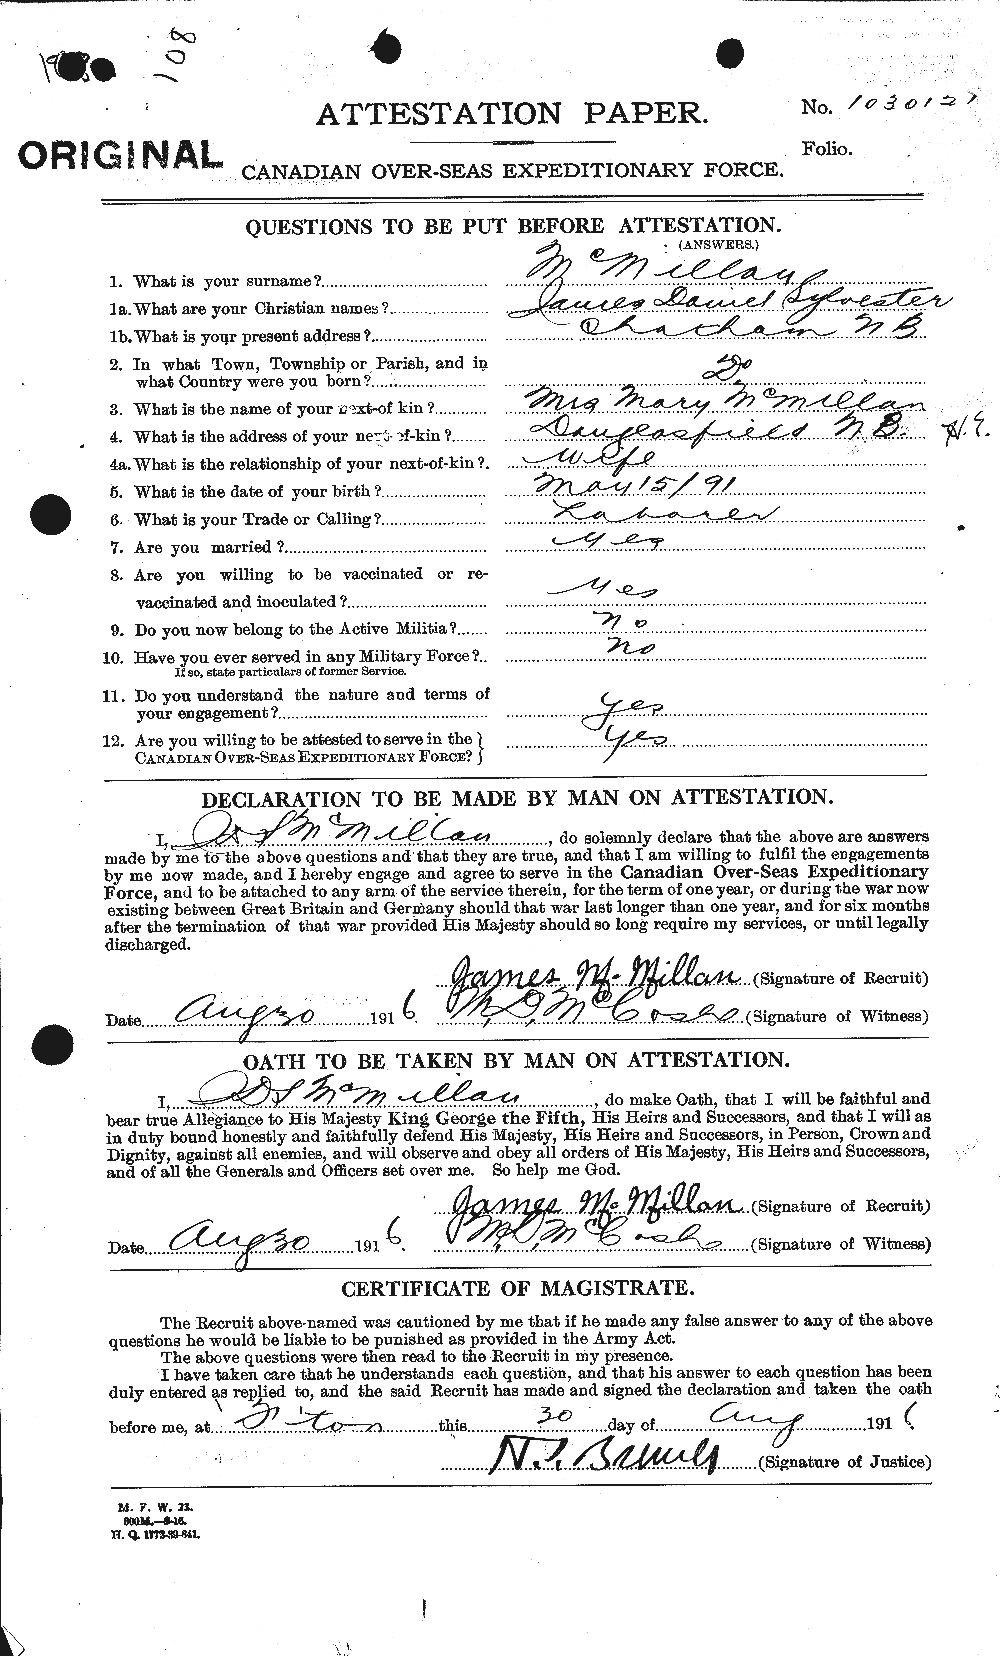 Dossiers du Personnel de la Première Guerre mondiale - CEC 543934a